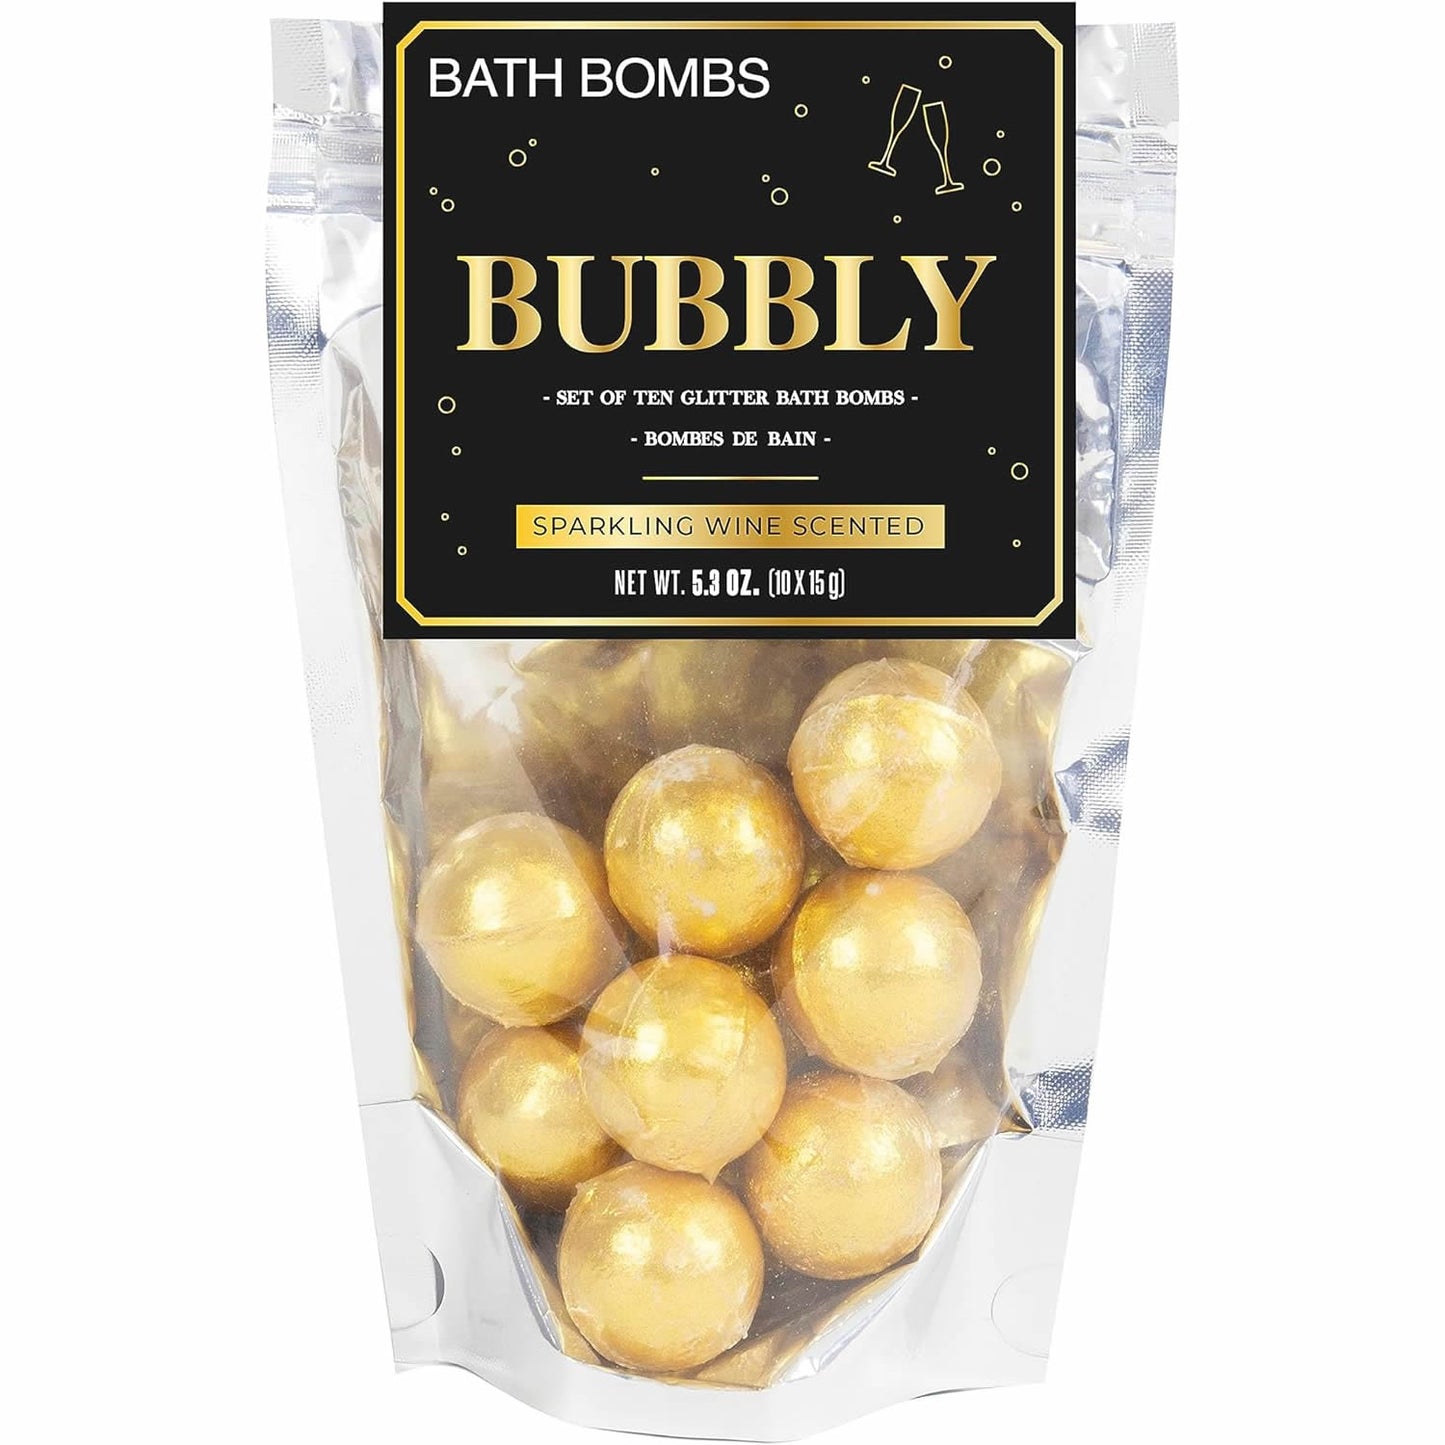 Bubbly Bath Bombs